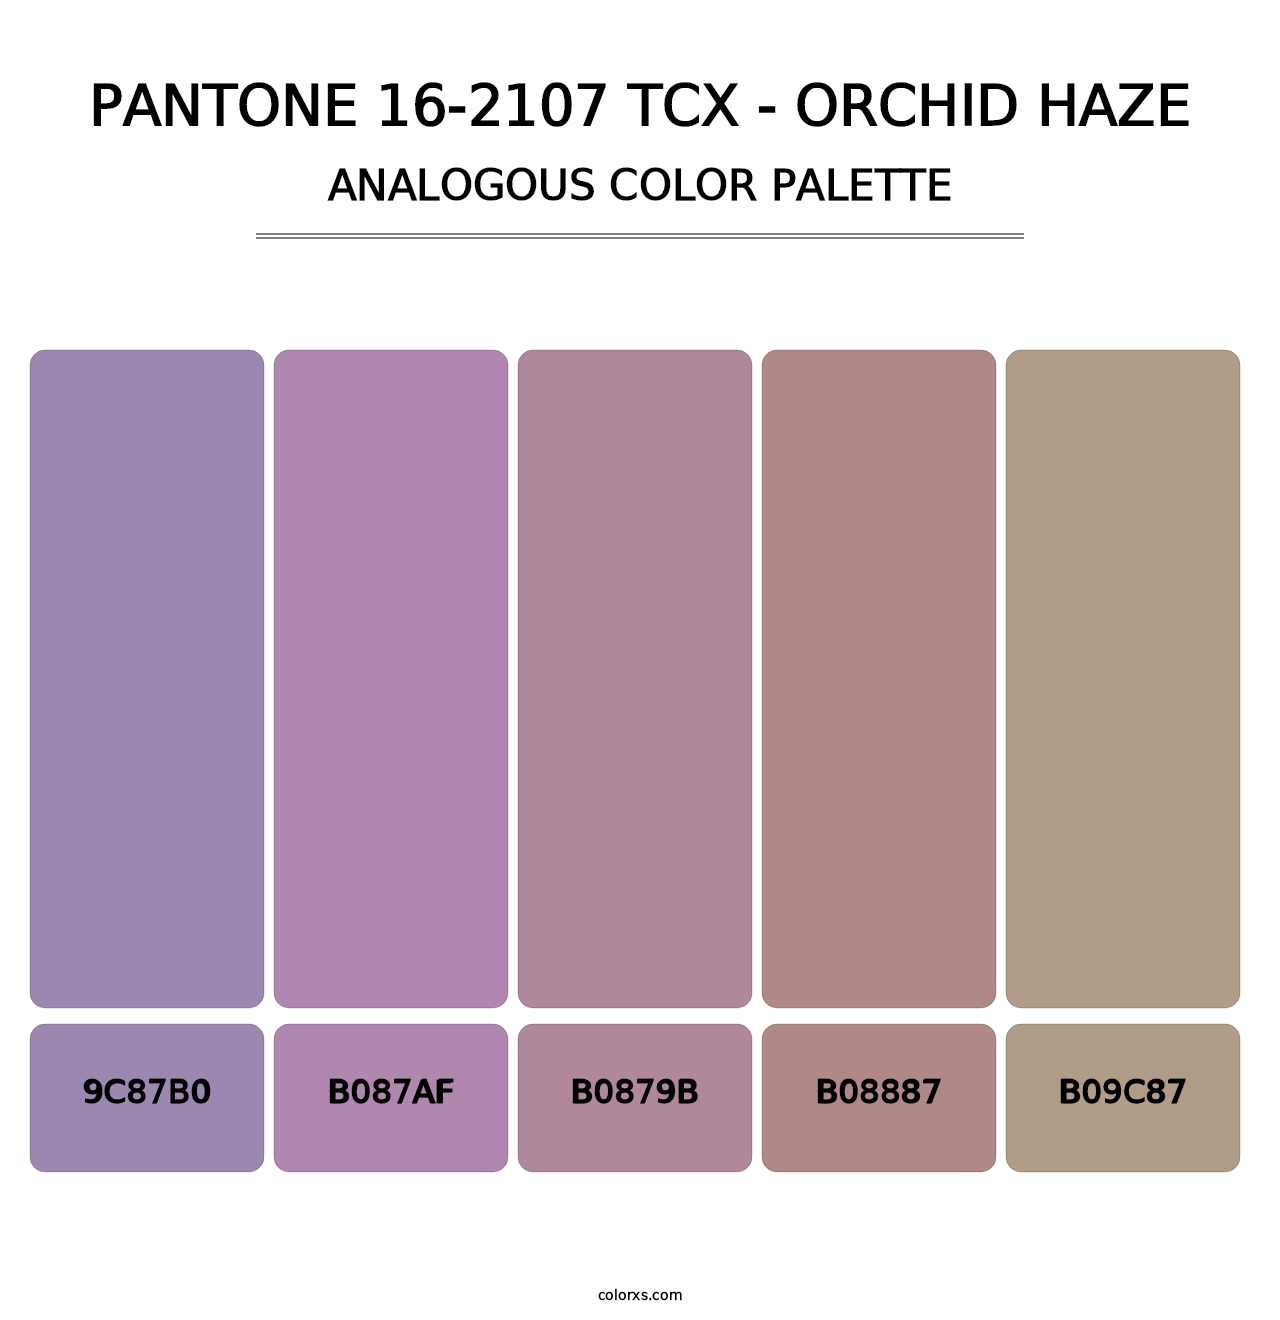 PANTONE 16-2107 TCX - Orchid Haze - Analogous Color Palette